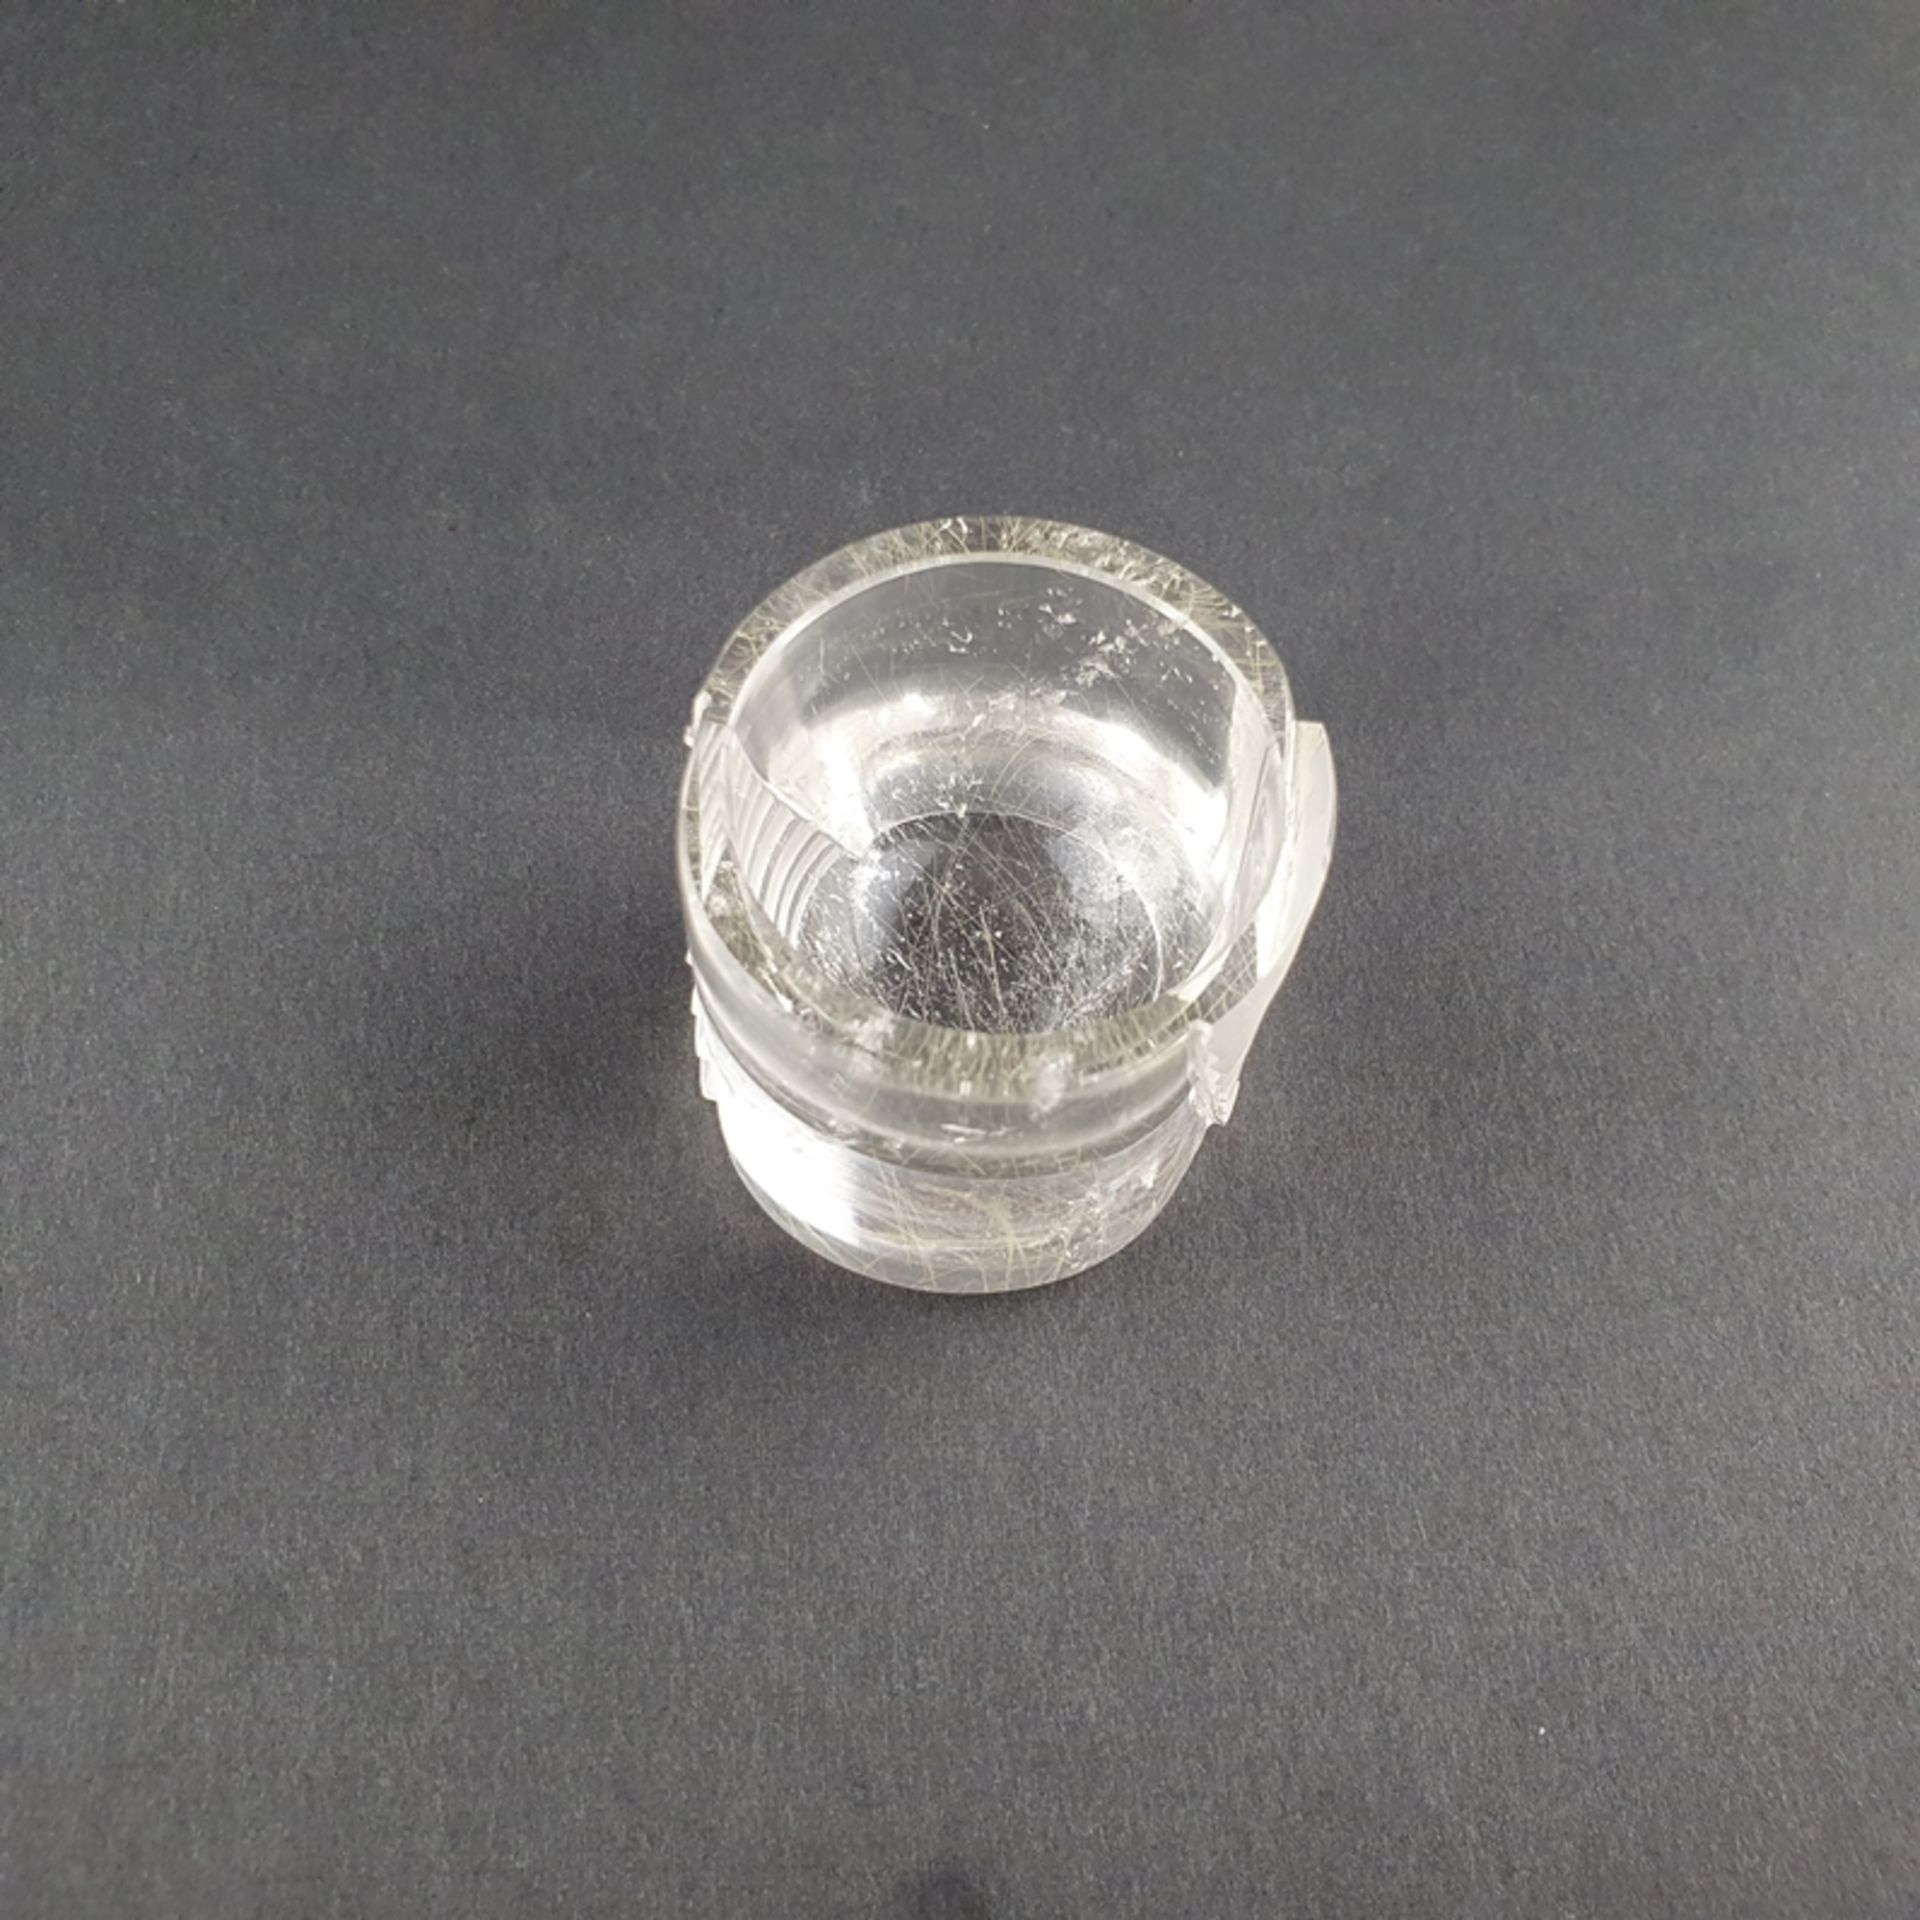 Digestifglas aus Bergkristall - ATELIER MUNSTEINER, Stipshausen (nahe Idar-Oberstein), zylindrische - Bild 3 aus 4